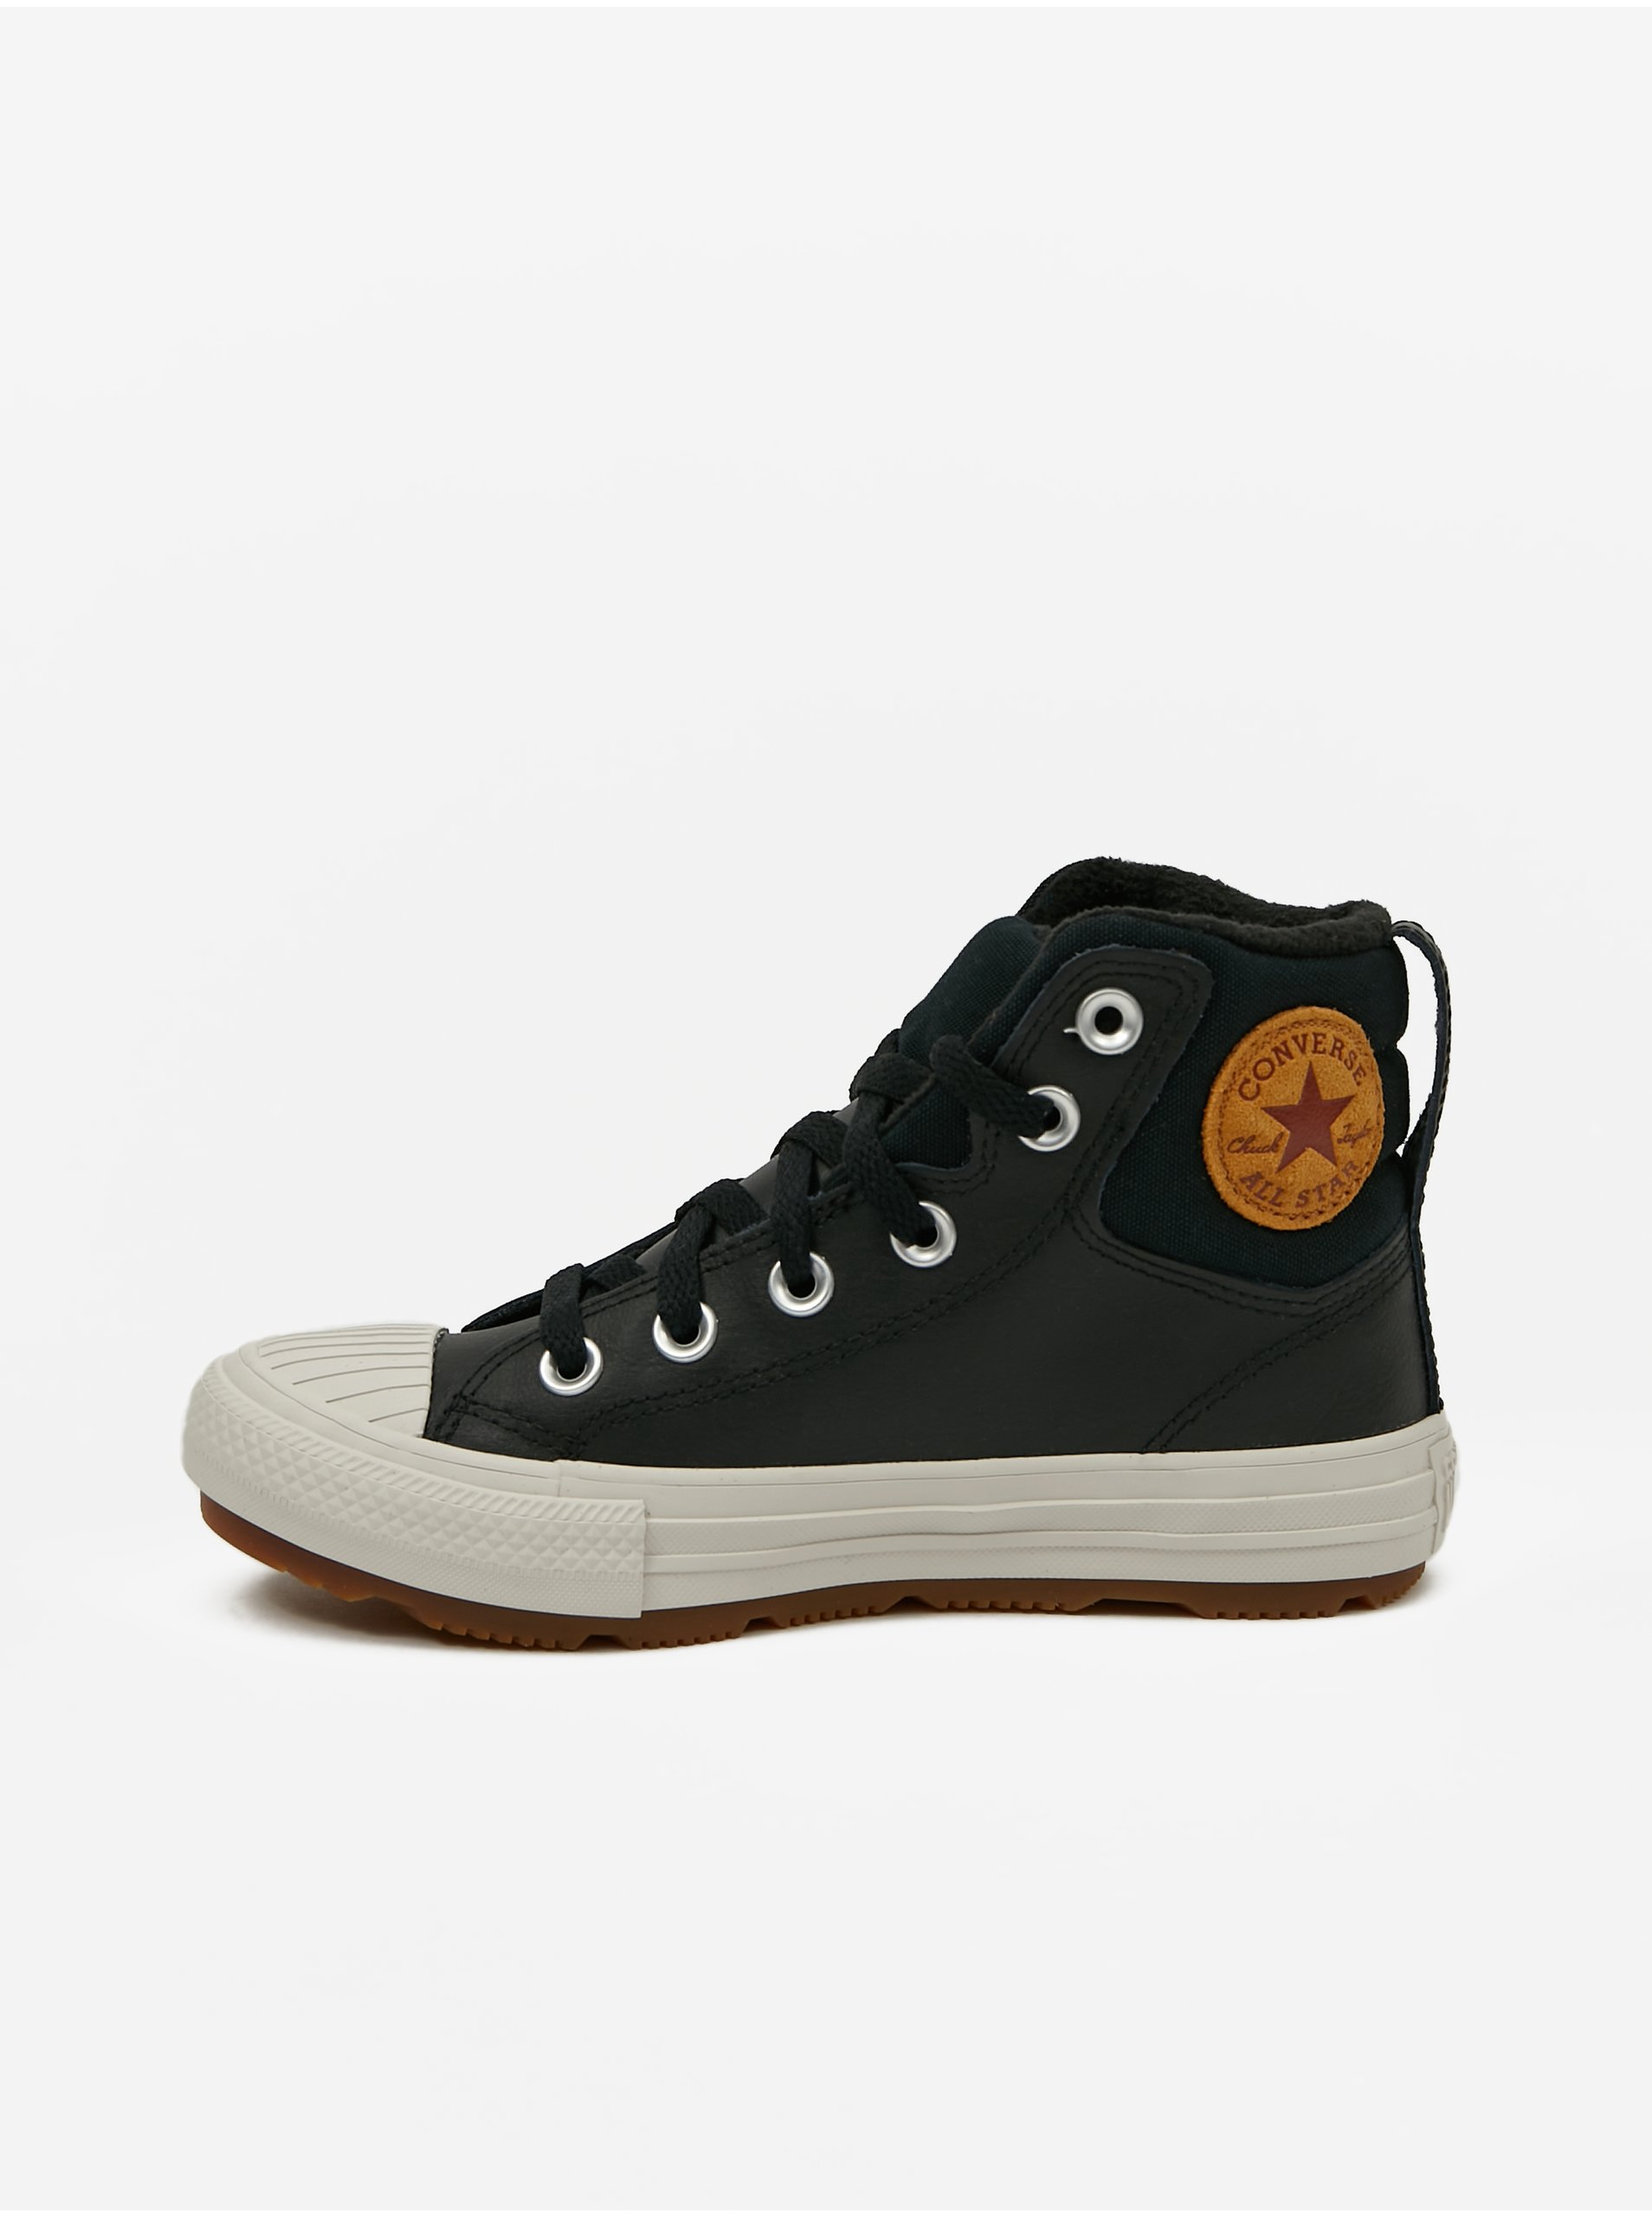 E-shop Čierne chlapčenské členkové kožené tenisky Converse Chuck Taylor All Star Berkshire Boot Leather